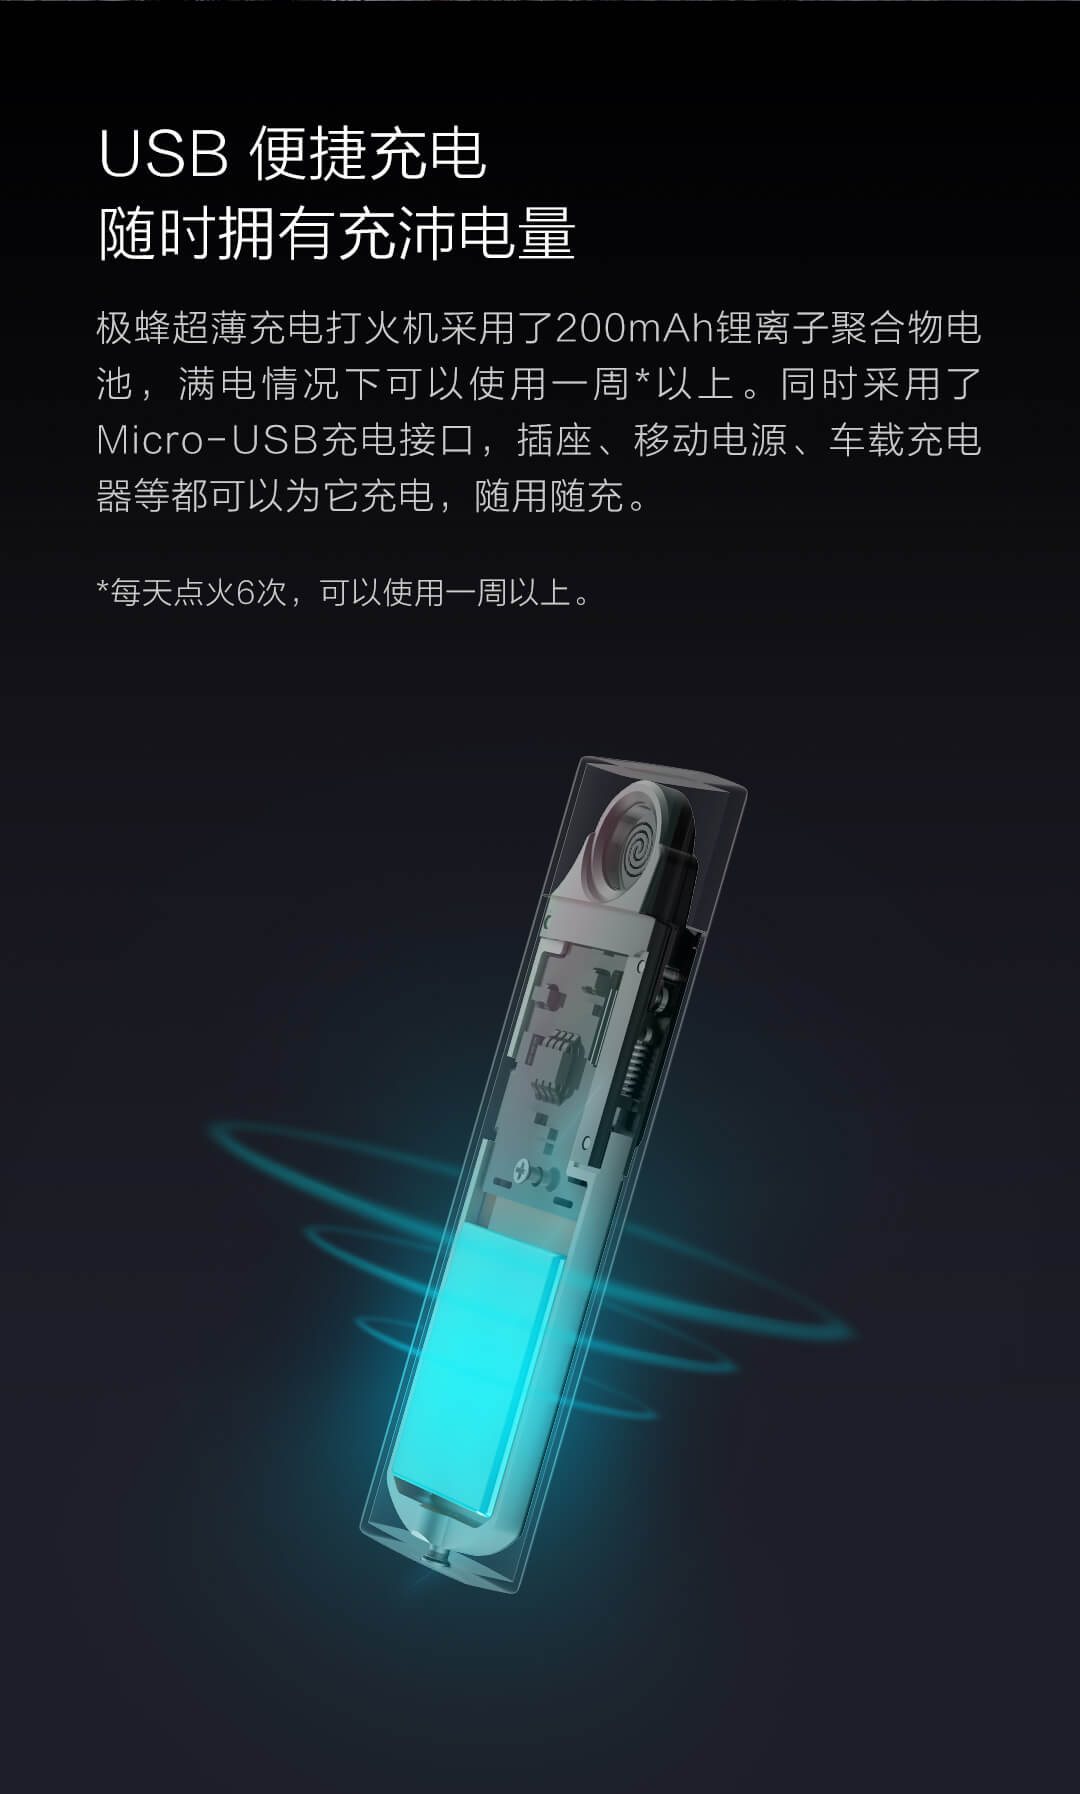 product_奇妙_极蜂超薄充电打火机